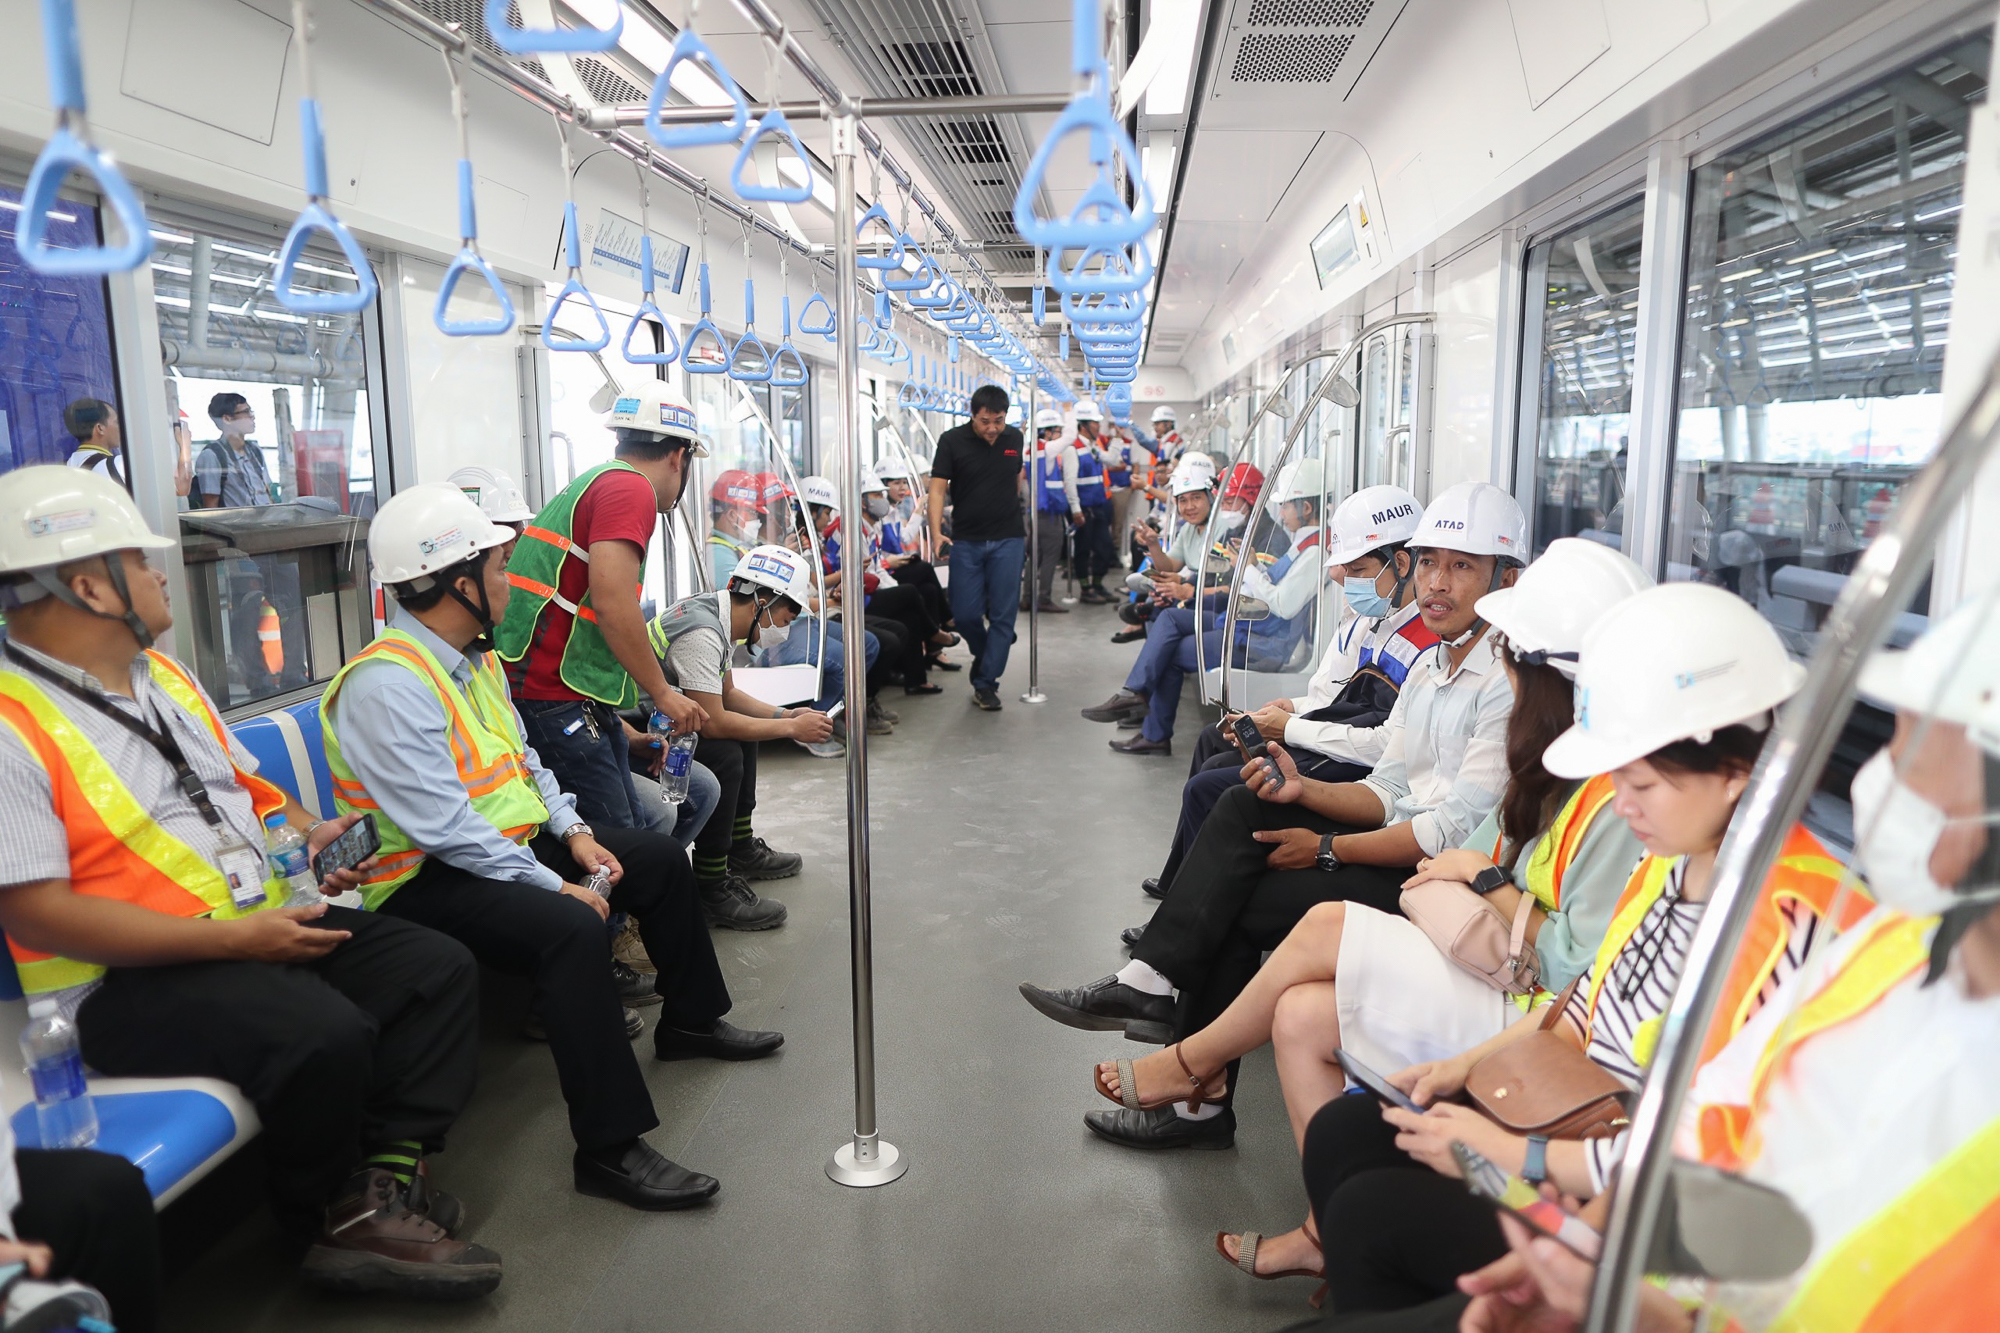 Tàu Metro số 1 TP.HCM chính chức lăn bánh chạy thử, khách thích thú lần đầu tiên được trải nghiệm  - Ảnh 7.